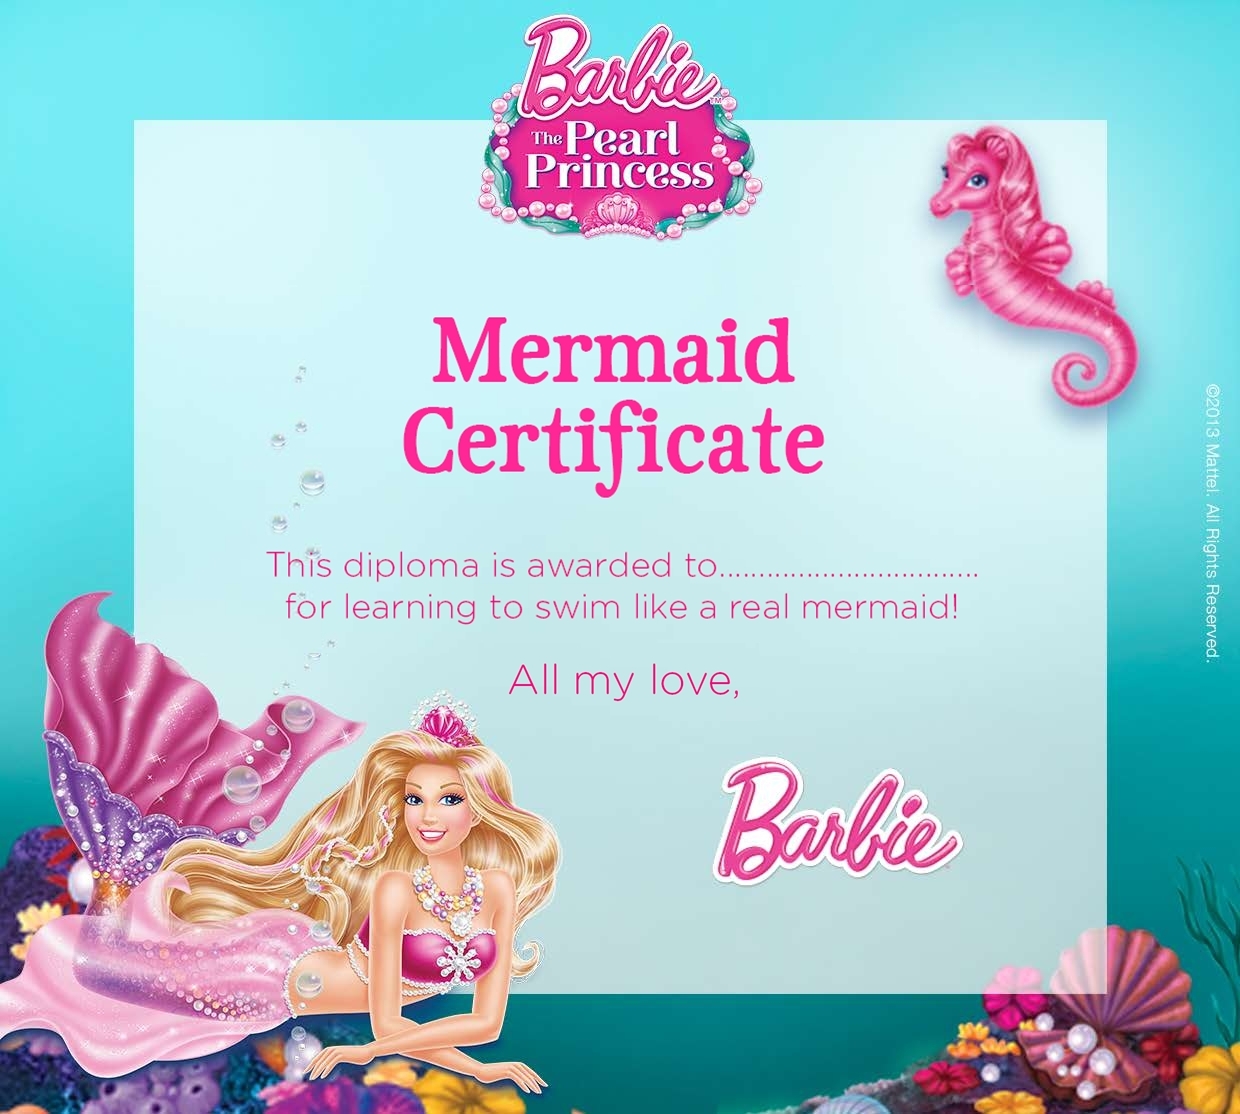 Barbie PP Mermaid Certificate - Barbie Movies Photo (36654471) - Fanpop